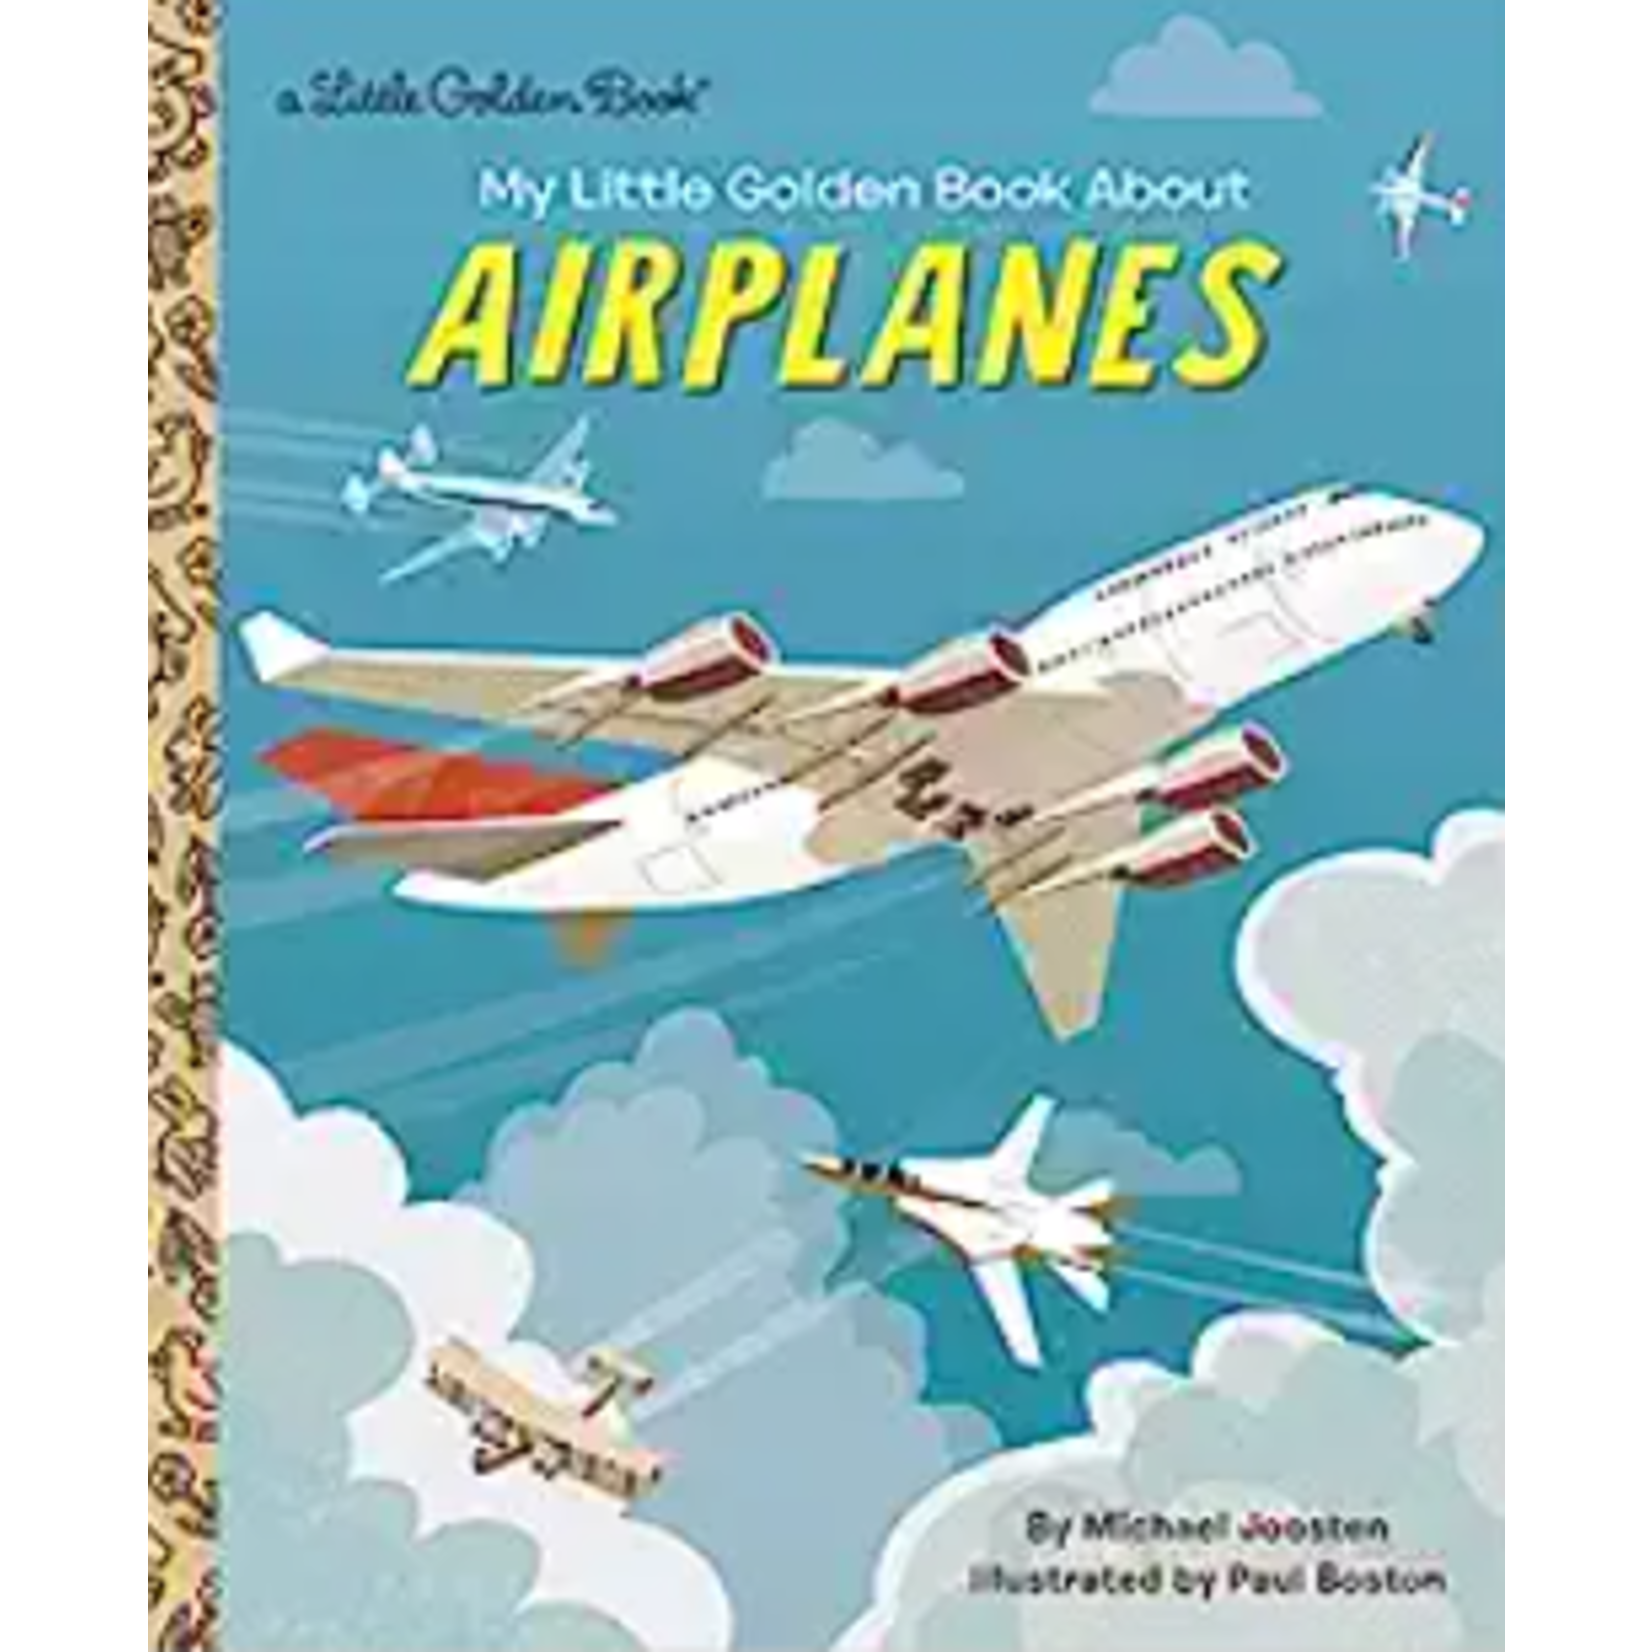 a Little Golden Book Little Golden Book About Airplanes